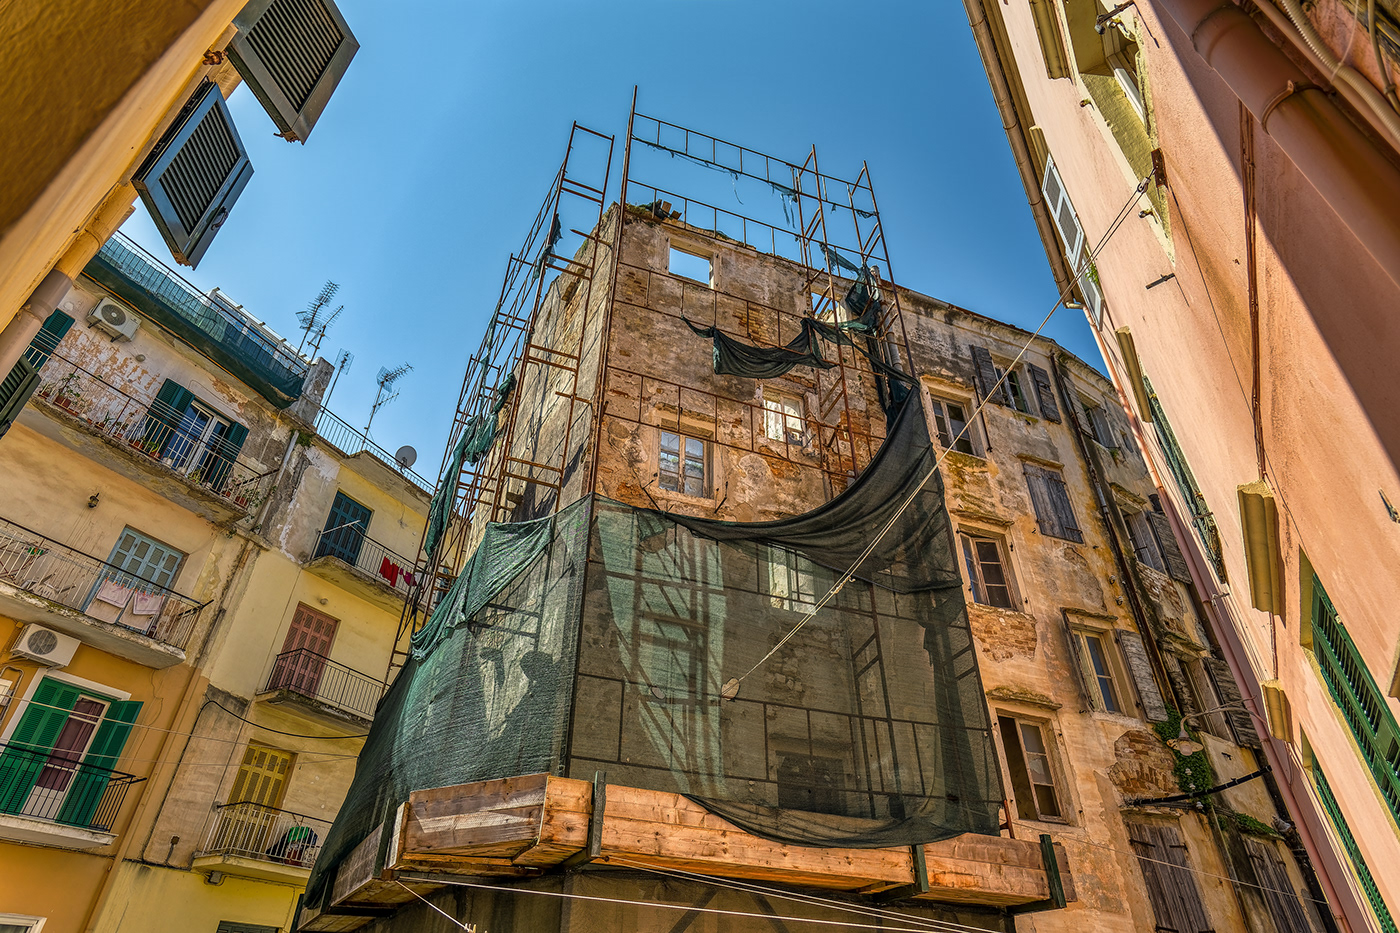 street photography greek clothes line clothes alleys Alleys of Europe Corfu Town Gassen Wäsche wäscheleine